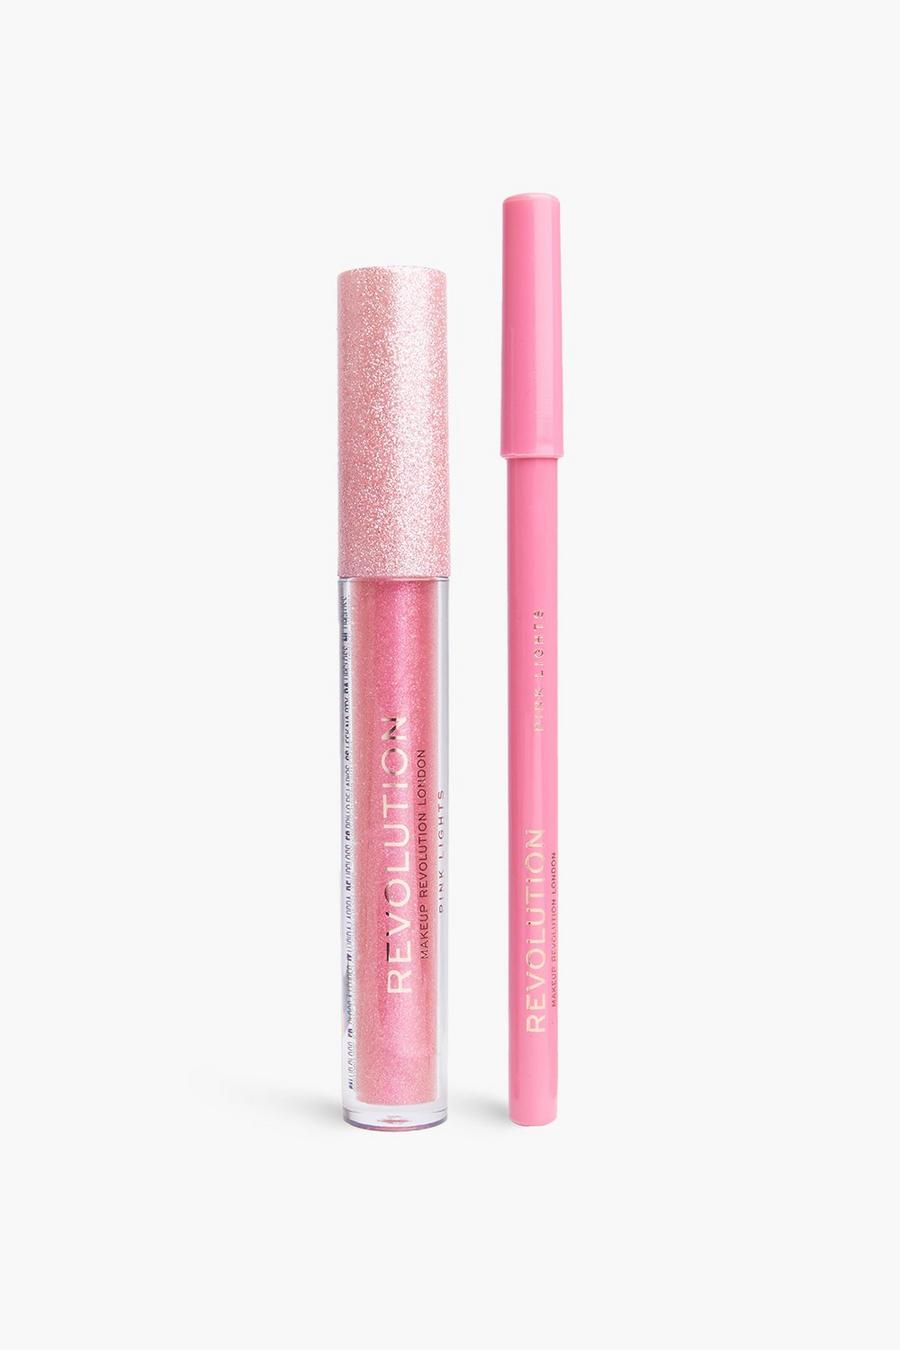 Revolution Ultimate Lights Shimmer Lip Kit, Pink lights